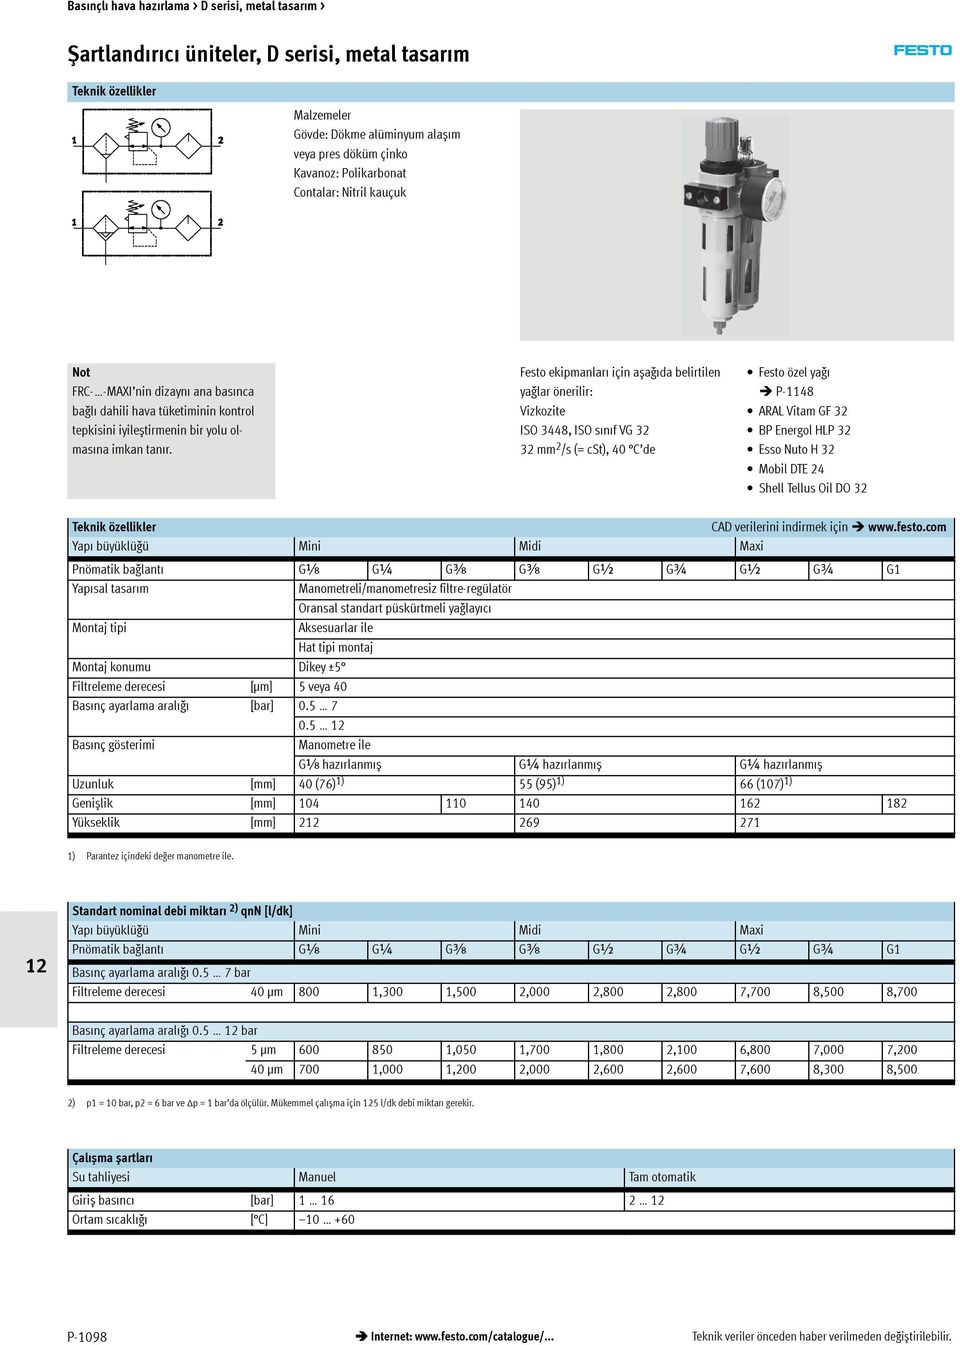 Festo ekipmanları için așağıda belirtilen yağlar önerilir: Vizkozite ISO 3448, ISO sınıfvg32 32 mm 2 /s (= cst), 40 C de Festo özel yağı P-1148 ARAL Vitam GF 32 BP Energol HLP 32 Esso Nuto H 32 Mobil